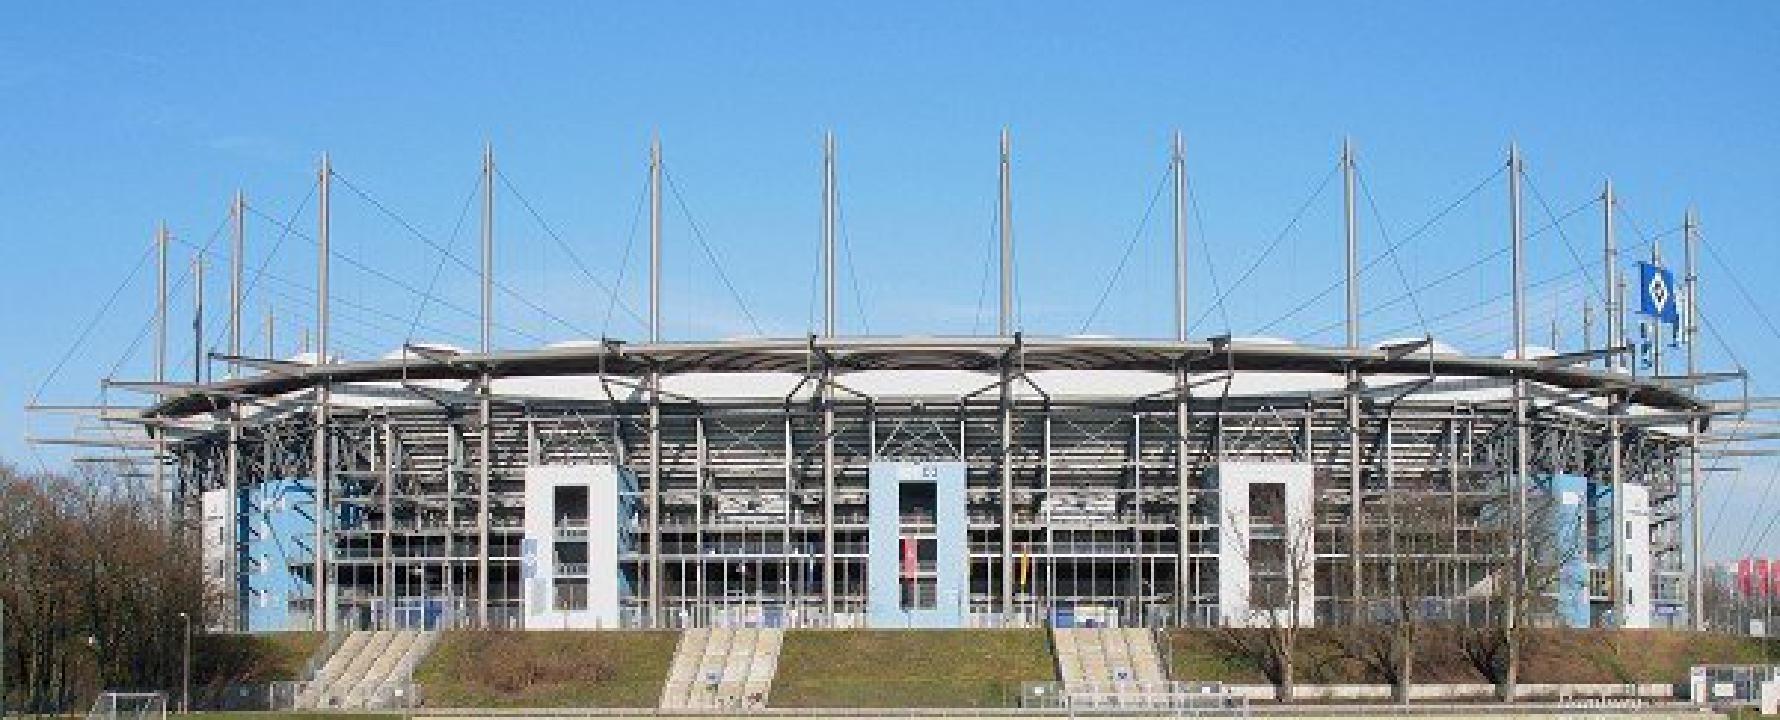 Promofoto von HSH Nordbank Arena.